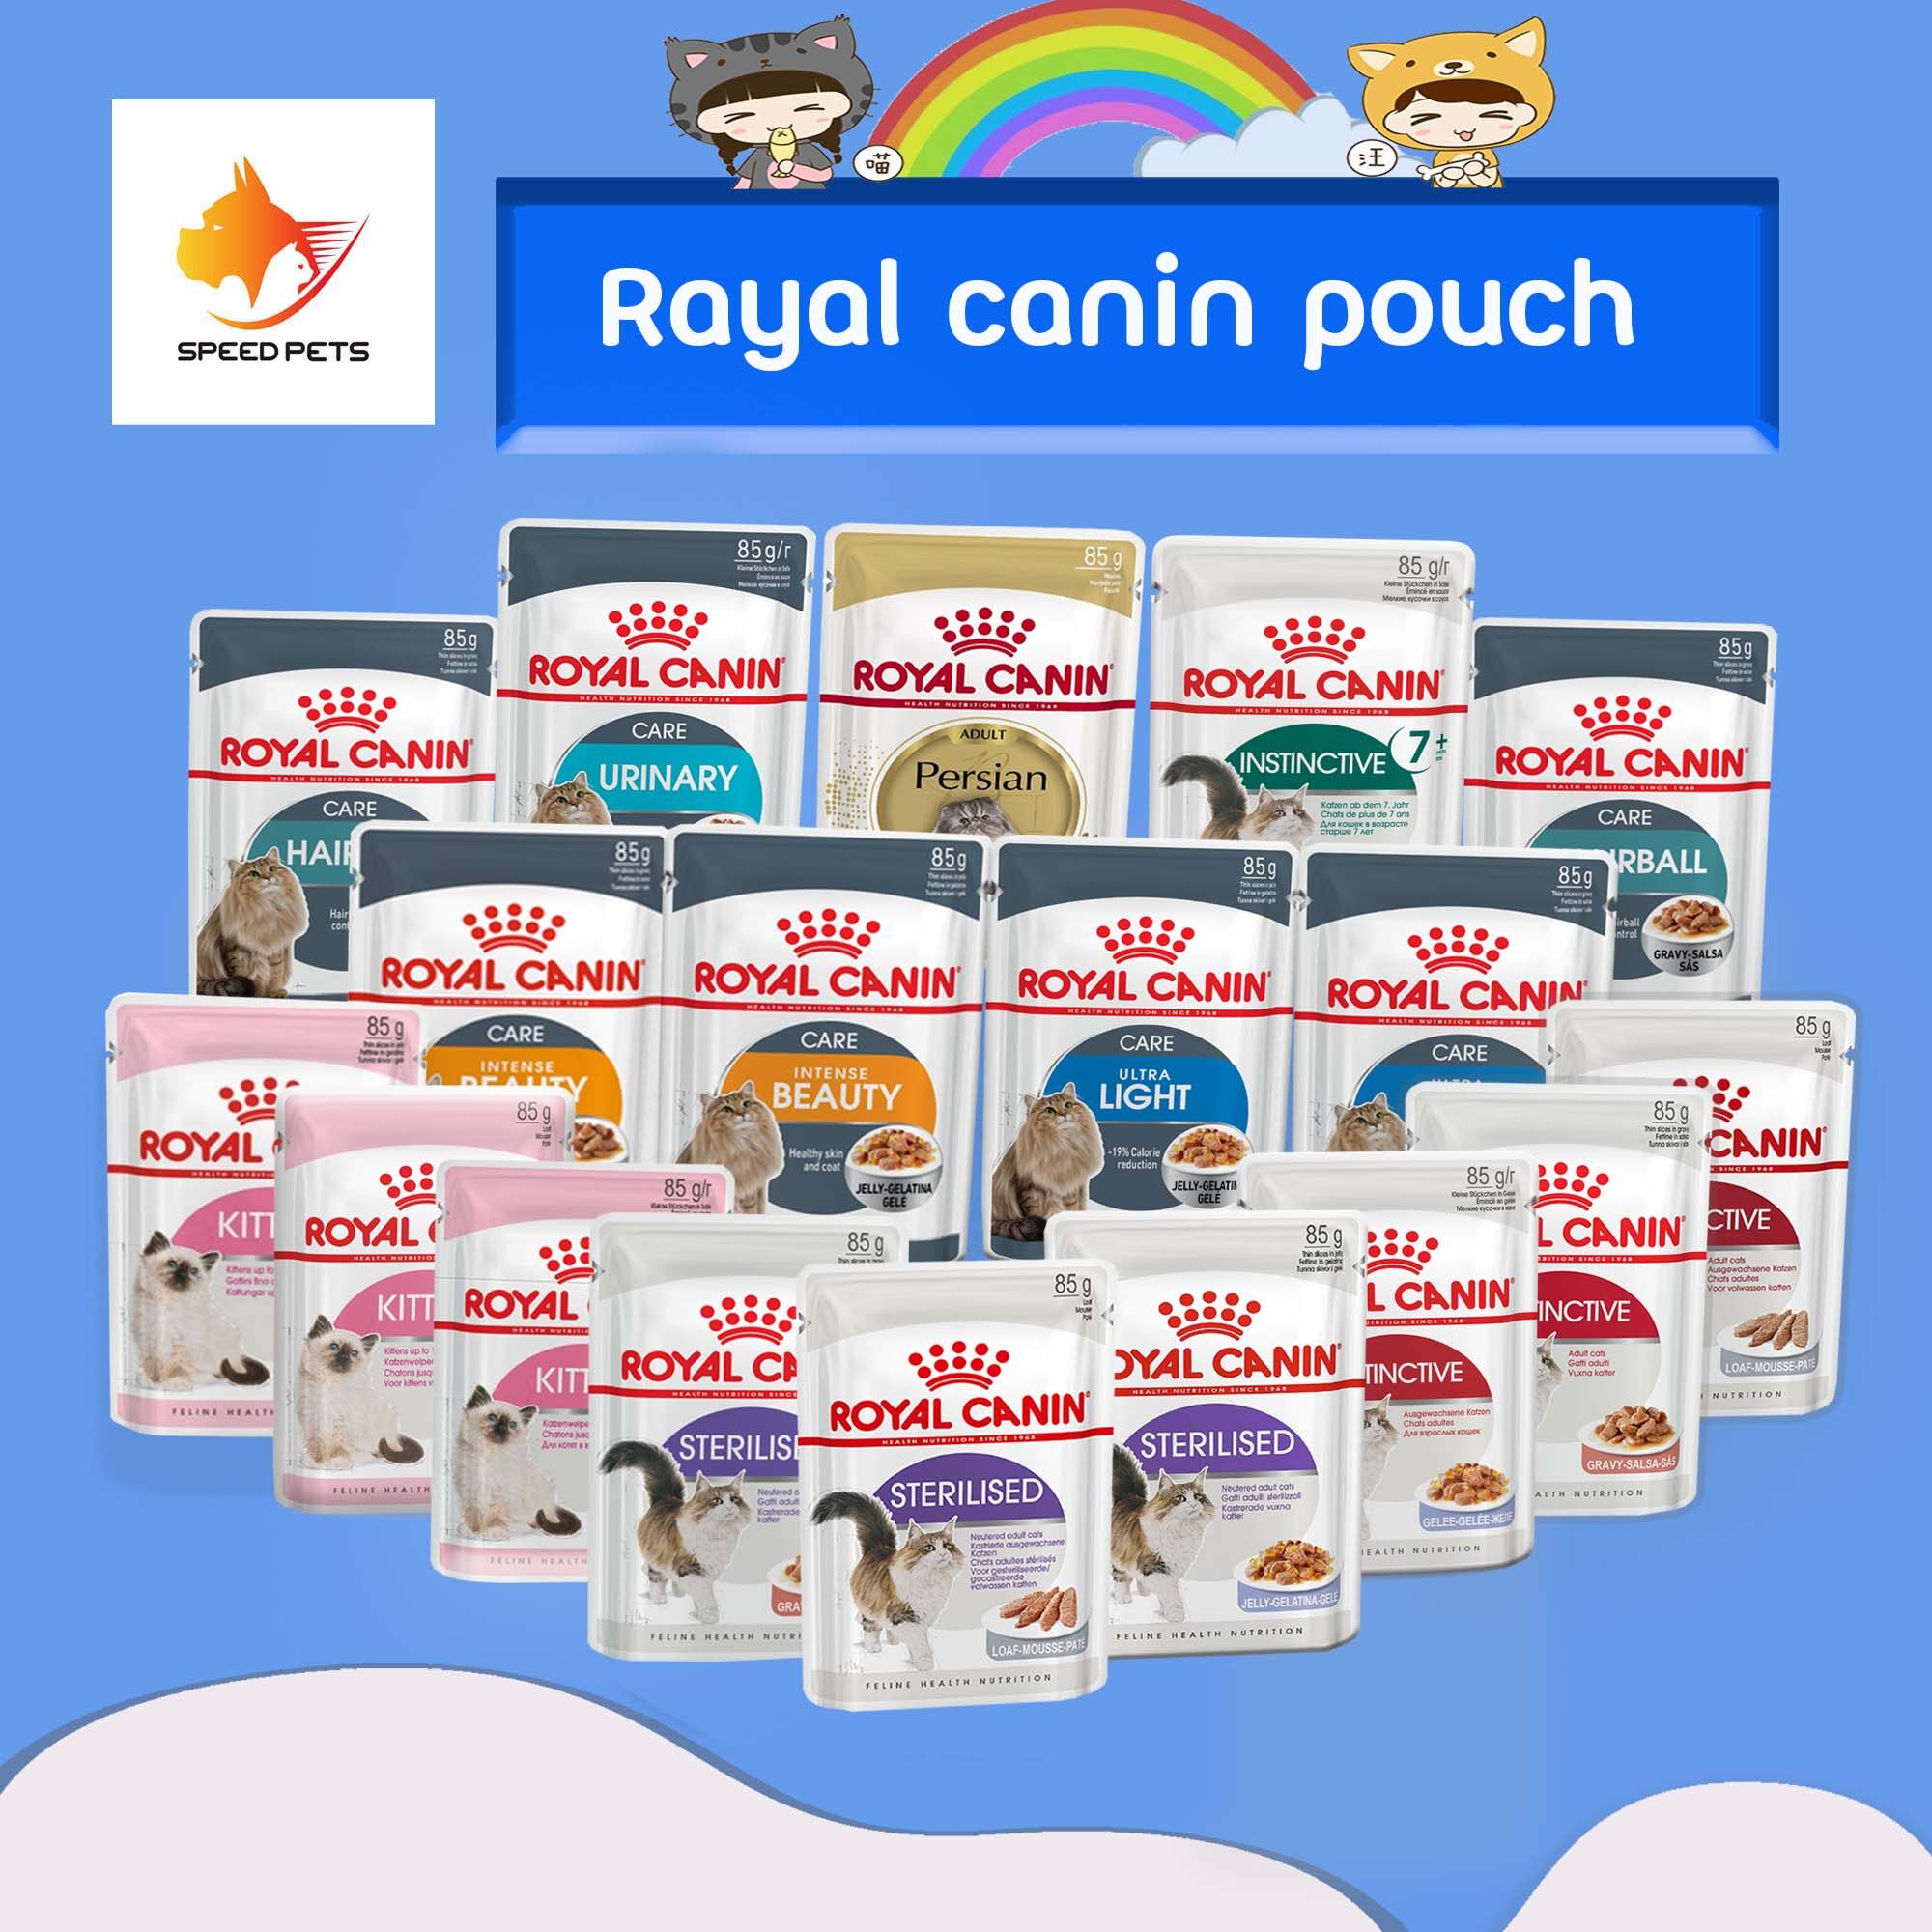 Royal Canin Pouch ขนาด 85 กรัม อาหารเปียกแมว มีหลายรสให้เลือก  จำนวน 1 ซอง